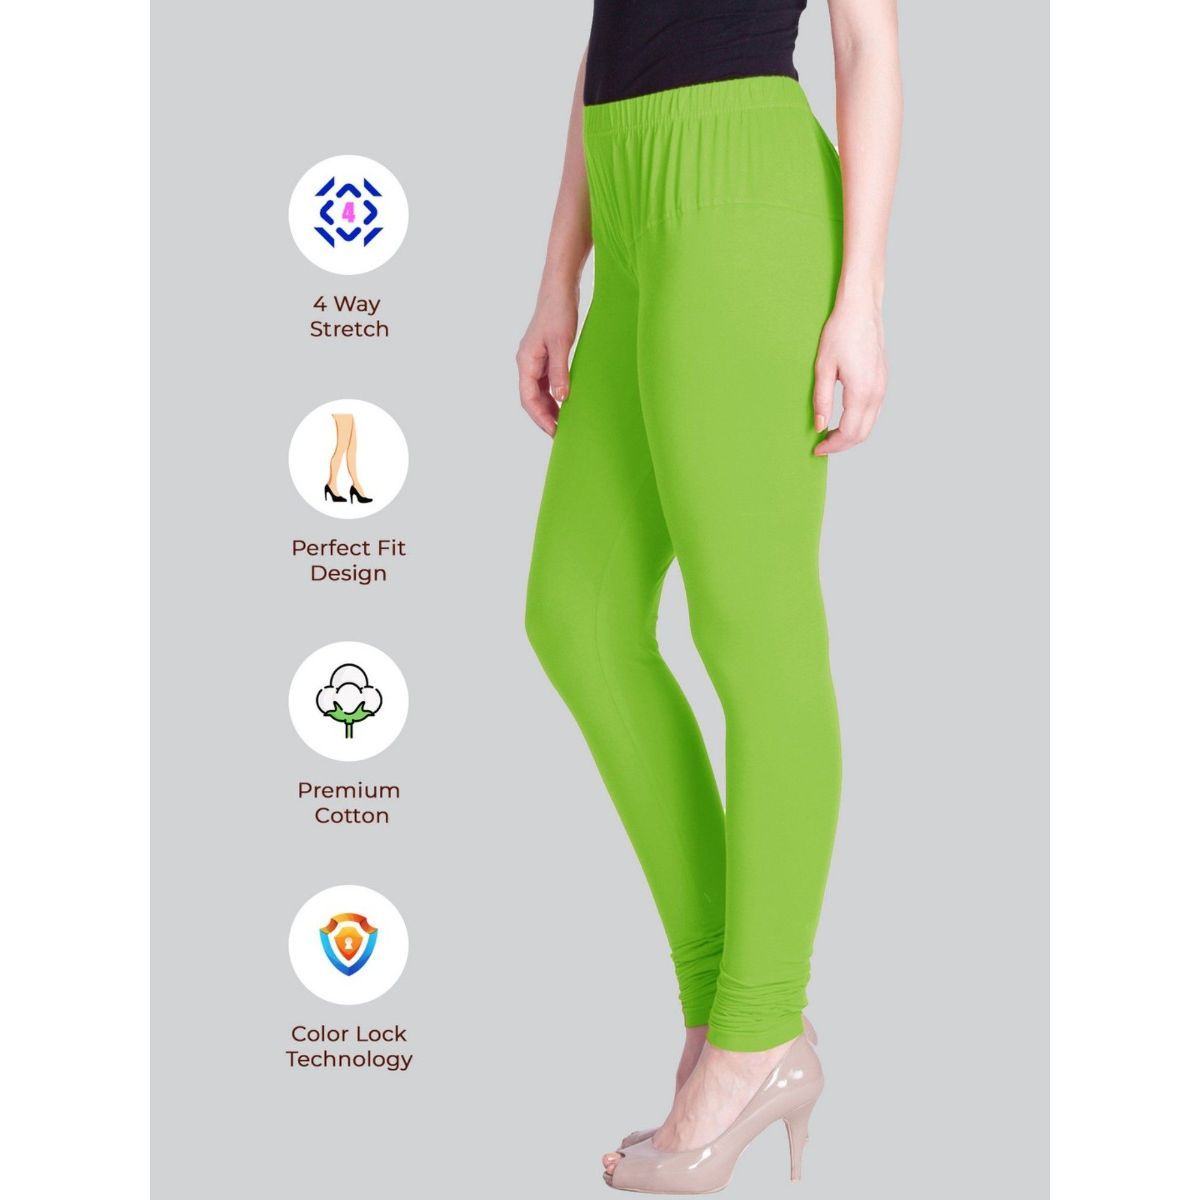 Buy Green Leggings for Women by Twin Birds Online | Ajio.com